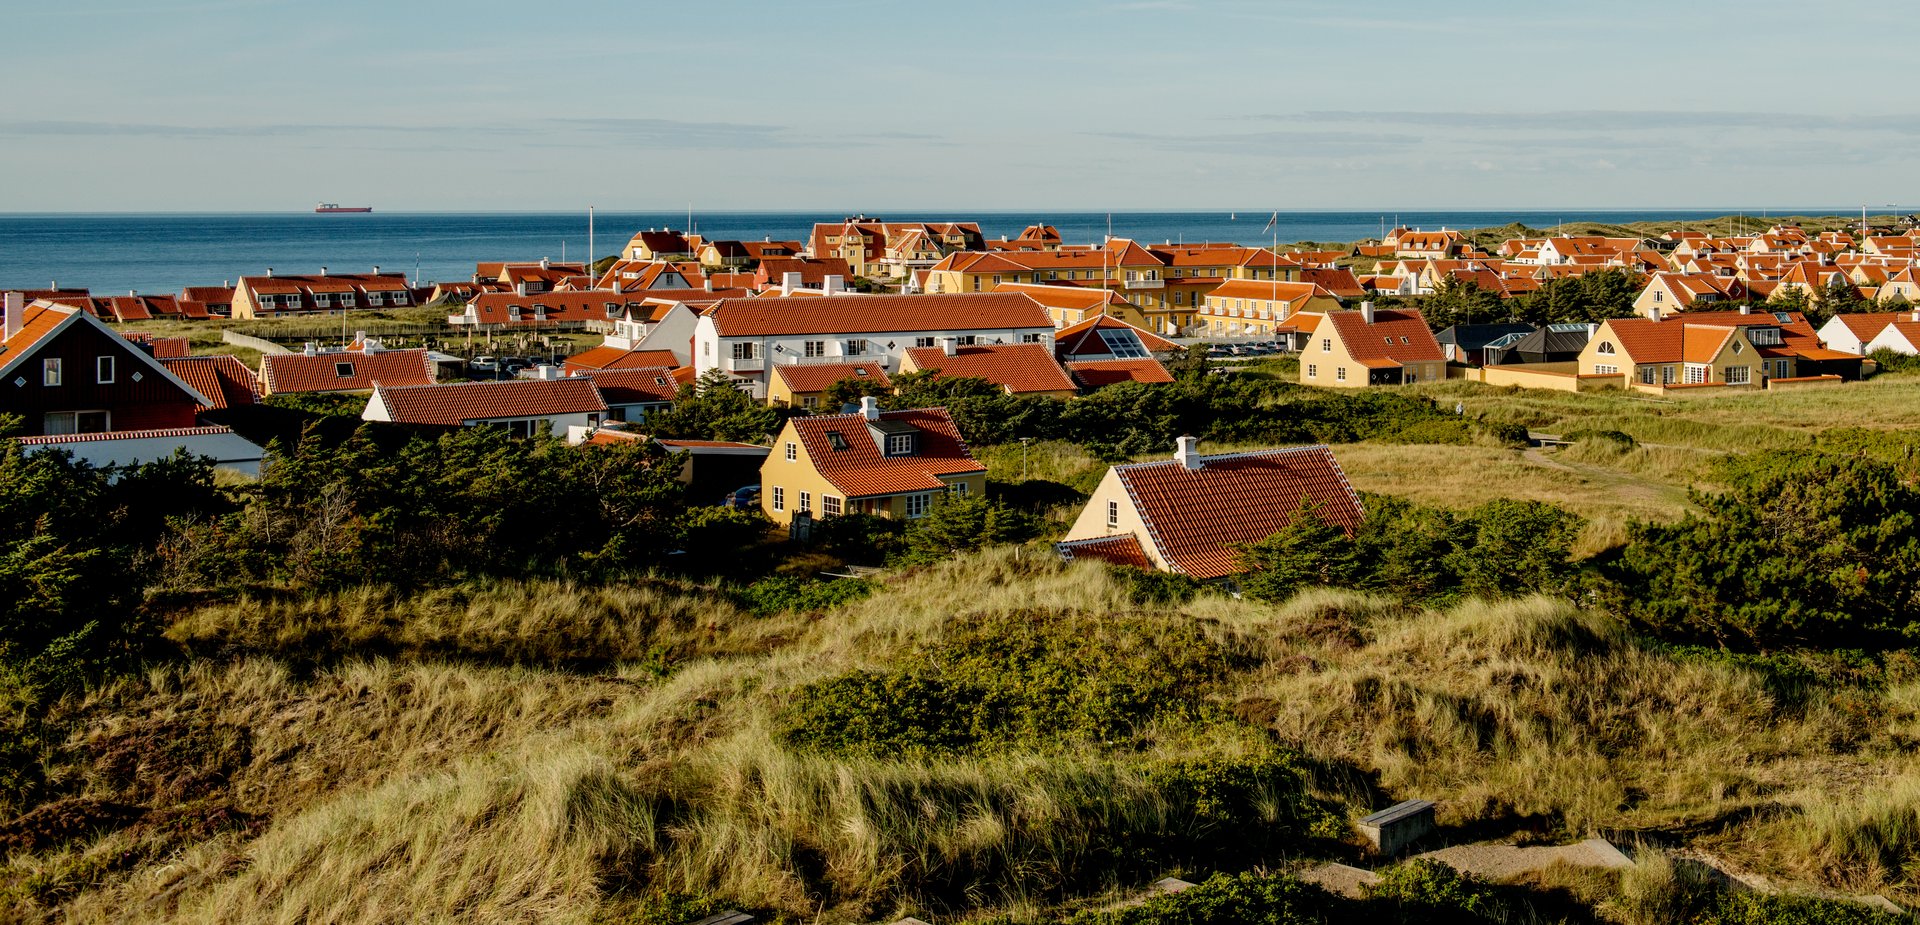 Die Stadt Skagen an der Nordsee. Alle Häuser haben rote Dächer und liegen verstreut in den Dünen in Küstennähe. Bild: VisitDenmark/Mette Johnsen